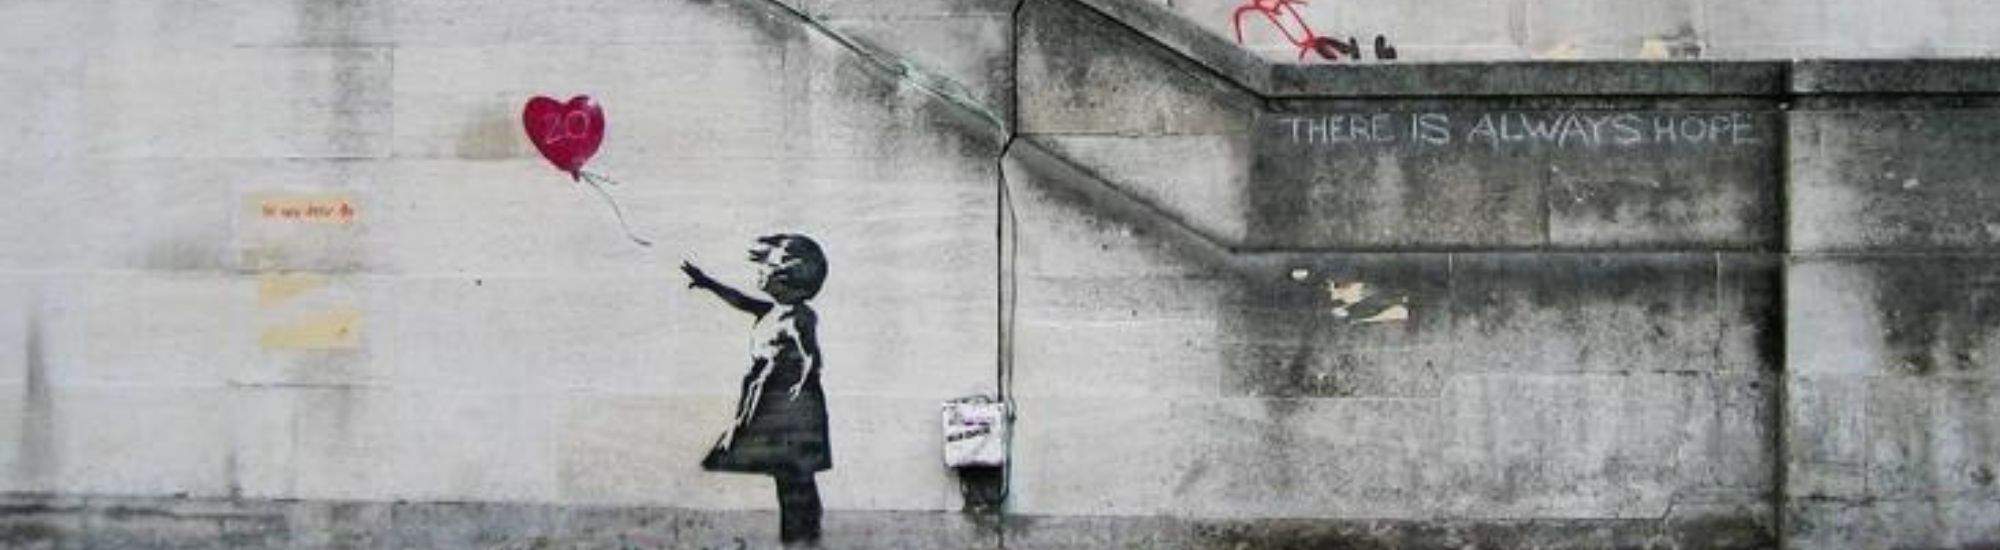 Banksy i Krakow: Verdenskjent Gatekunst